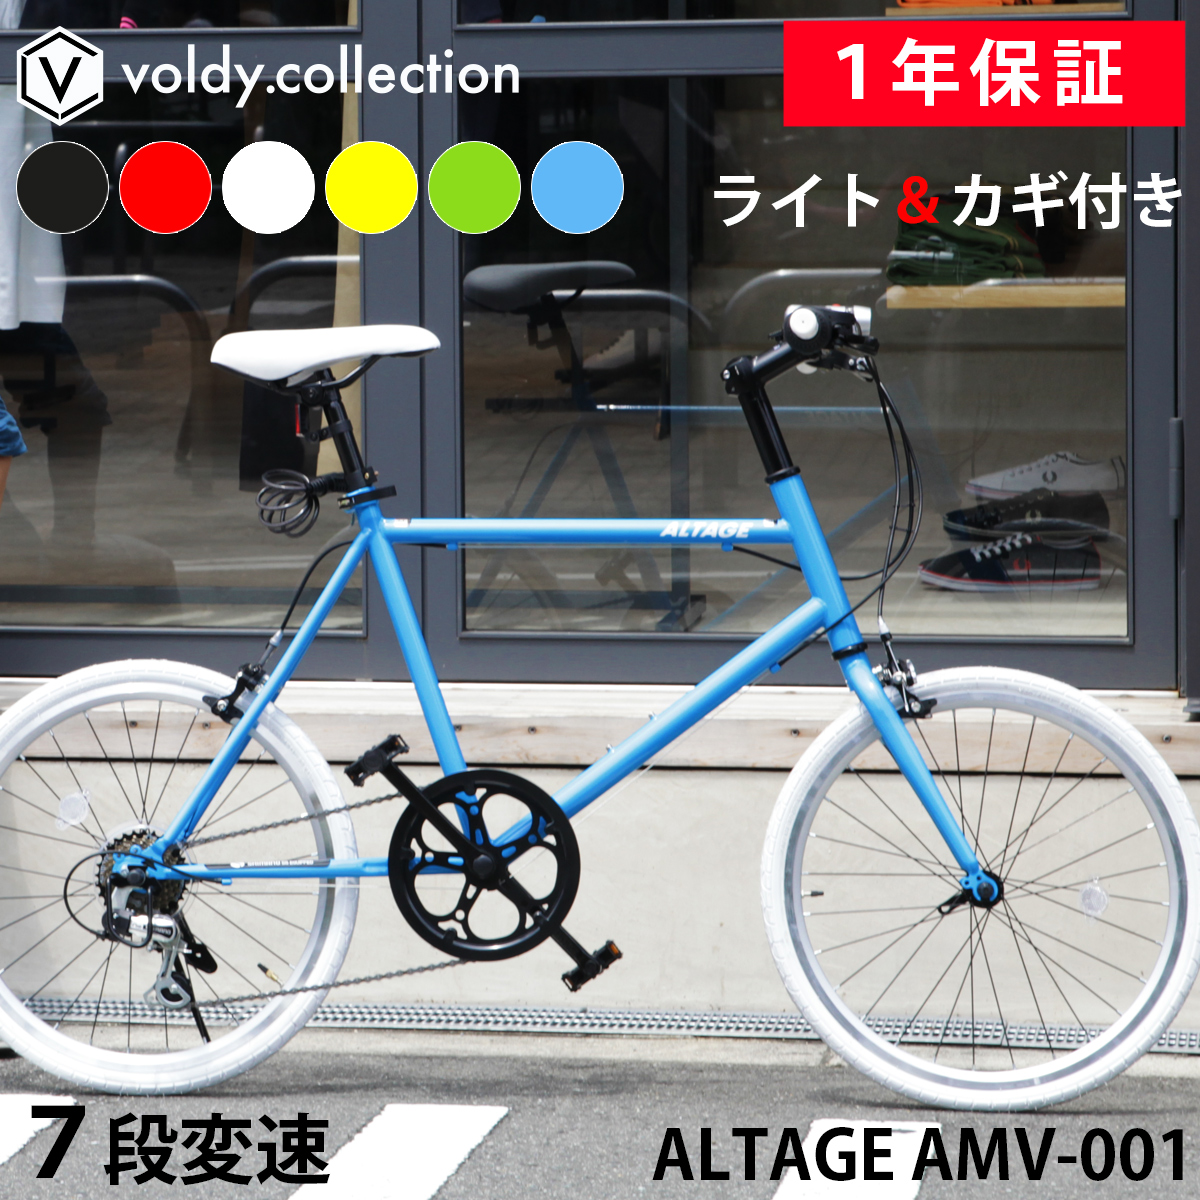 ミニベロ 小径自転車 20インチ シマノ7段変速 Fクイックリリース LEDライト・カギセット 軽量 コンパクトサイクル アルテージ ALTAGE  AMV-001